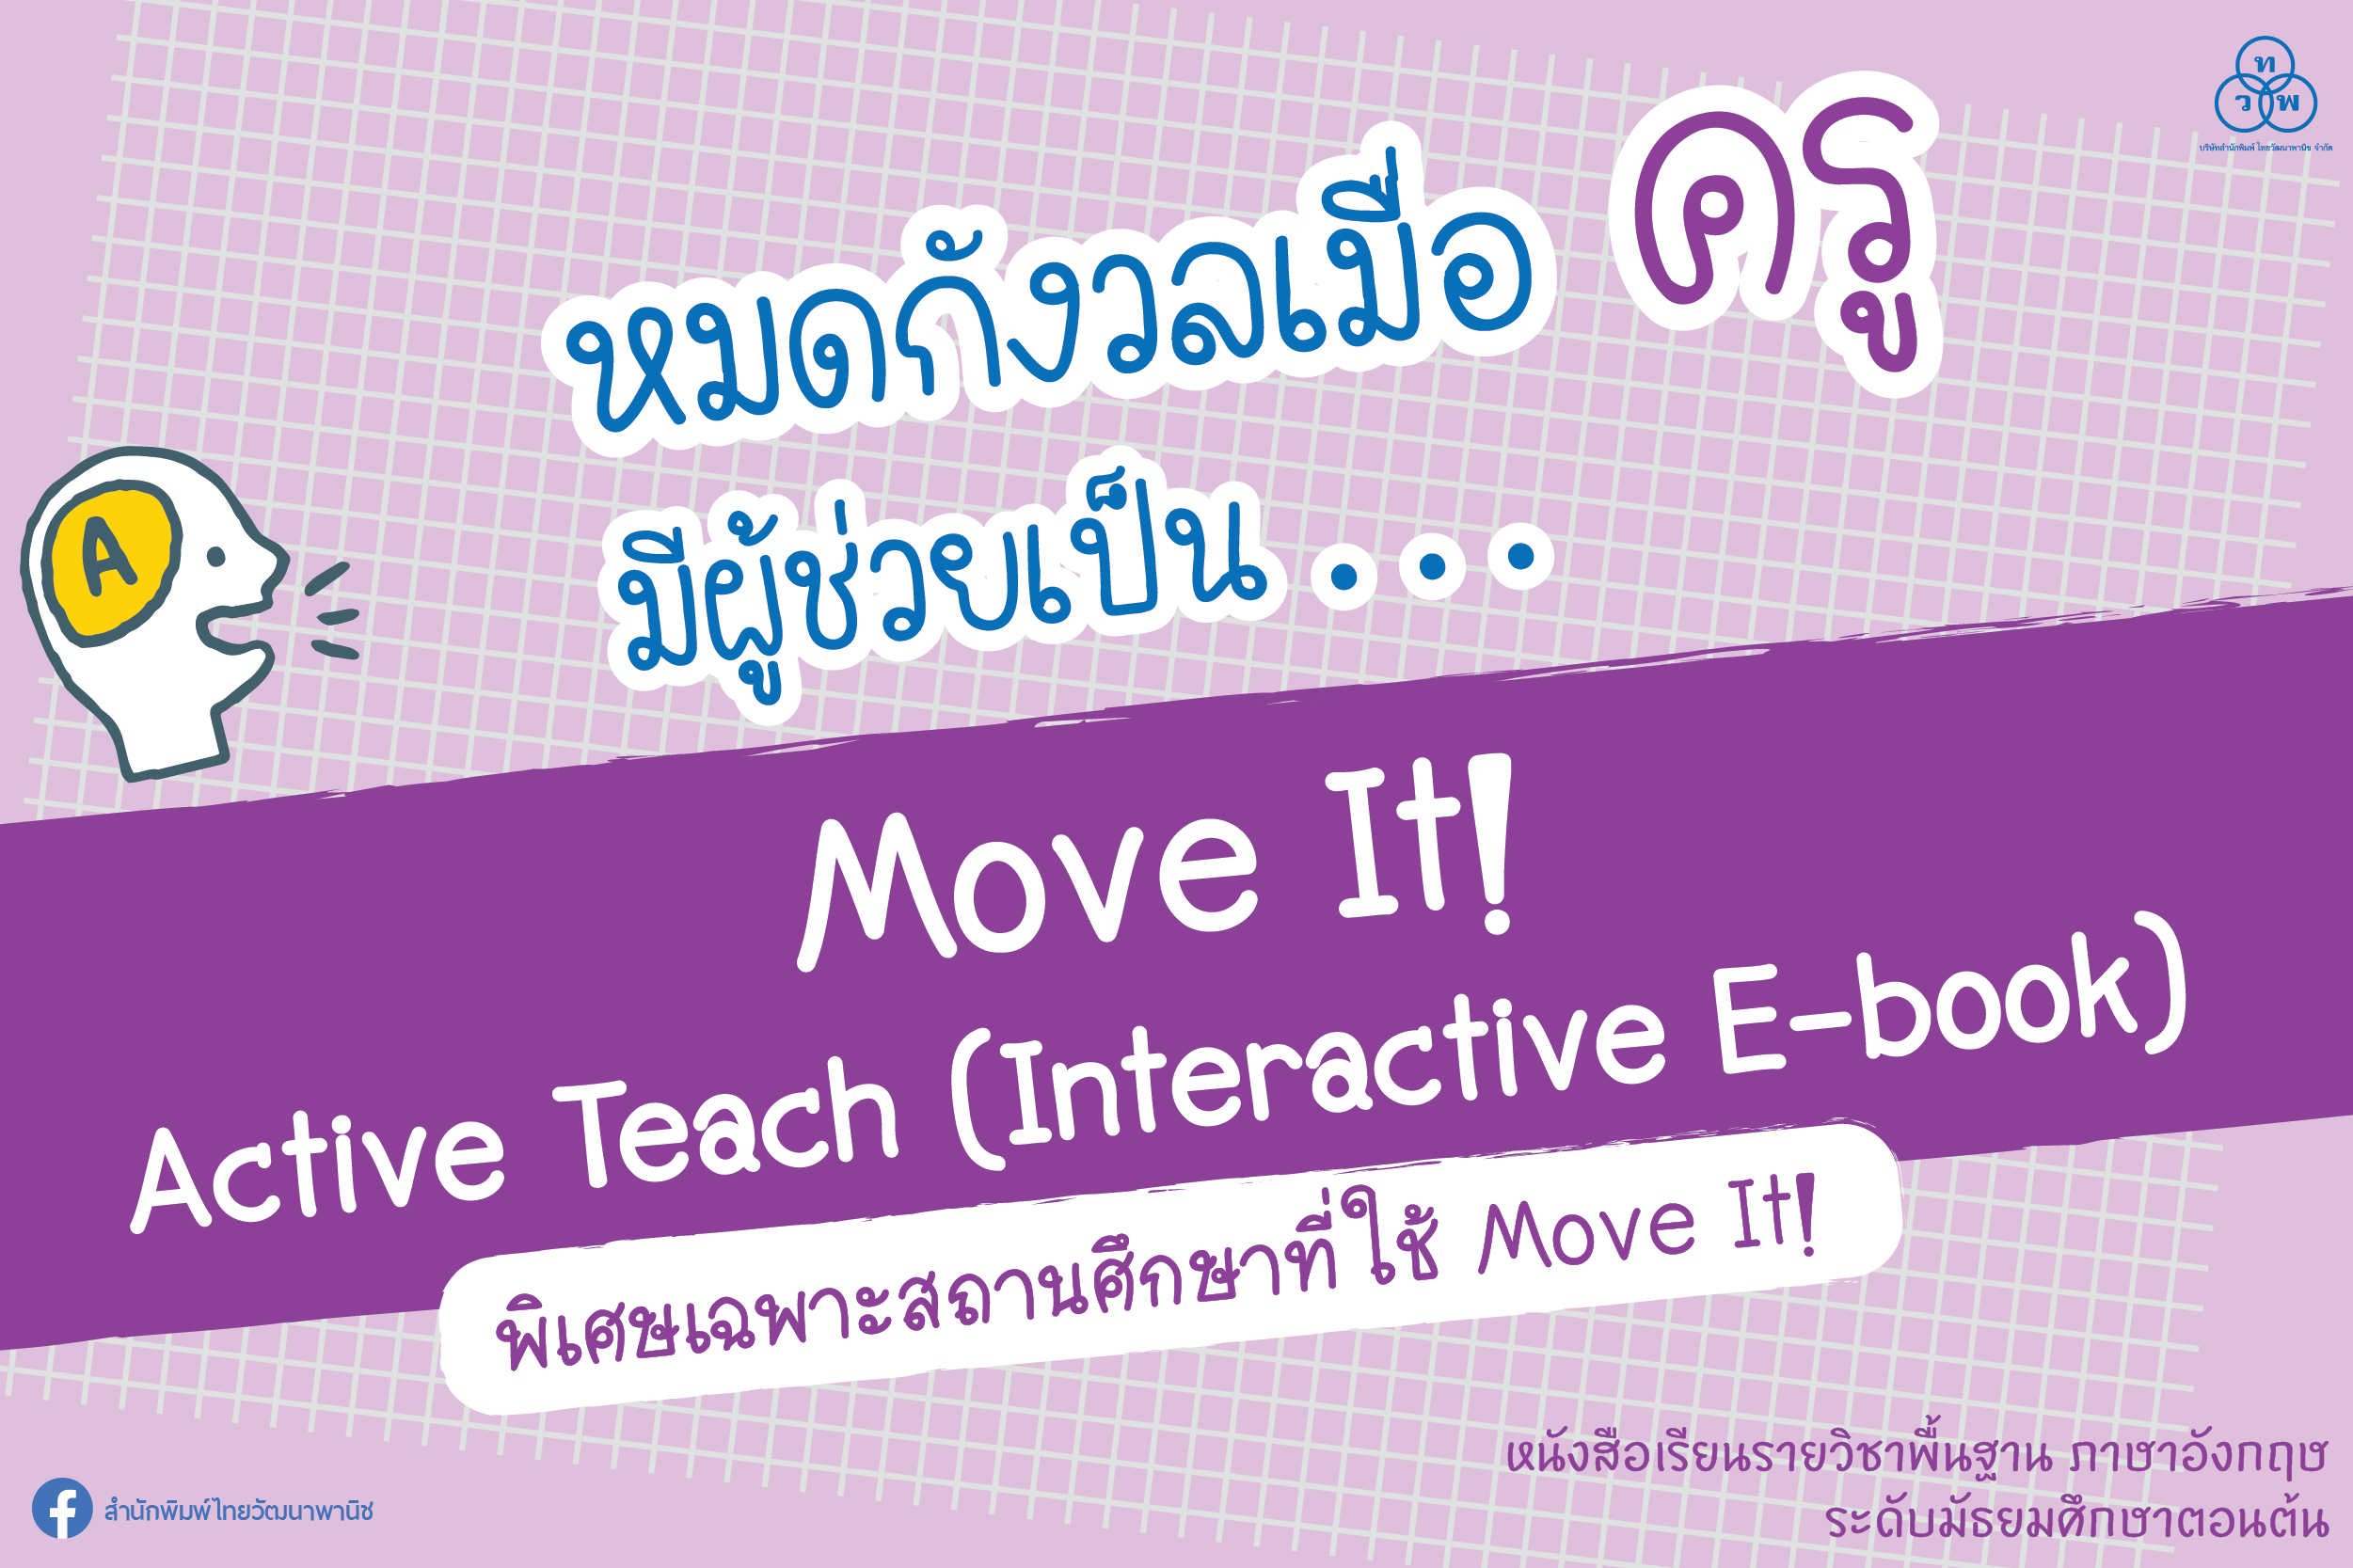 หมดกังวลเมื่อครู มีผู้ช่วยเป็น... Move It! Active Teach (Interactive E-book)